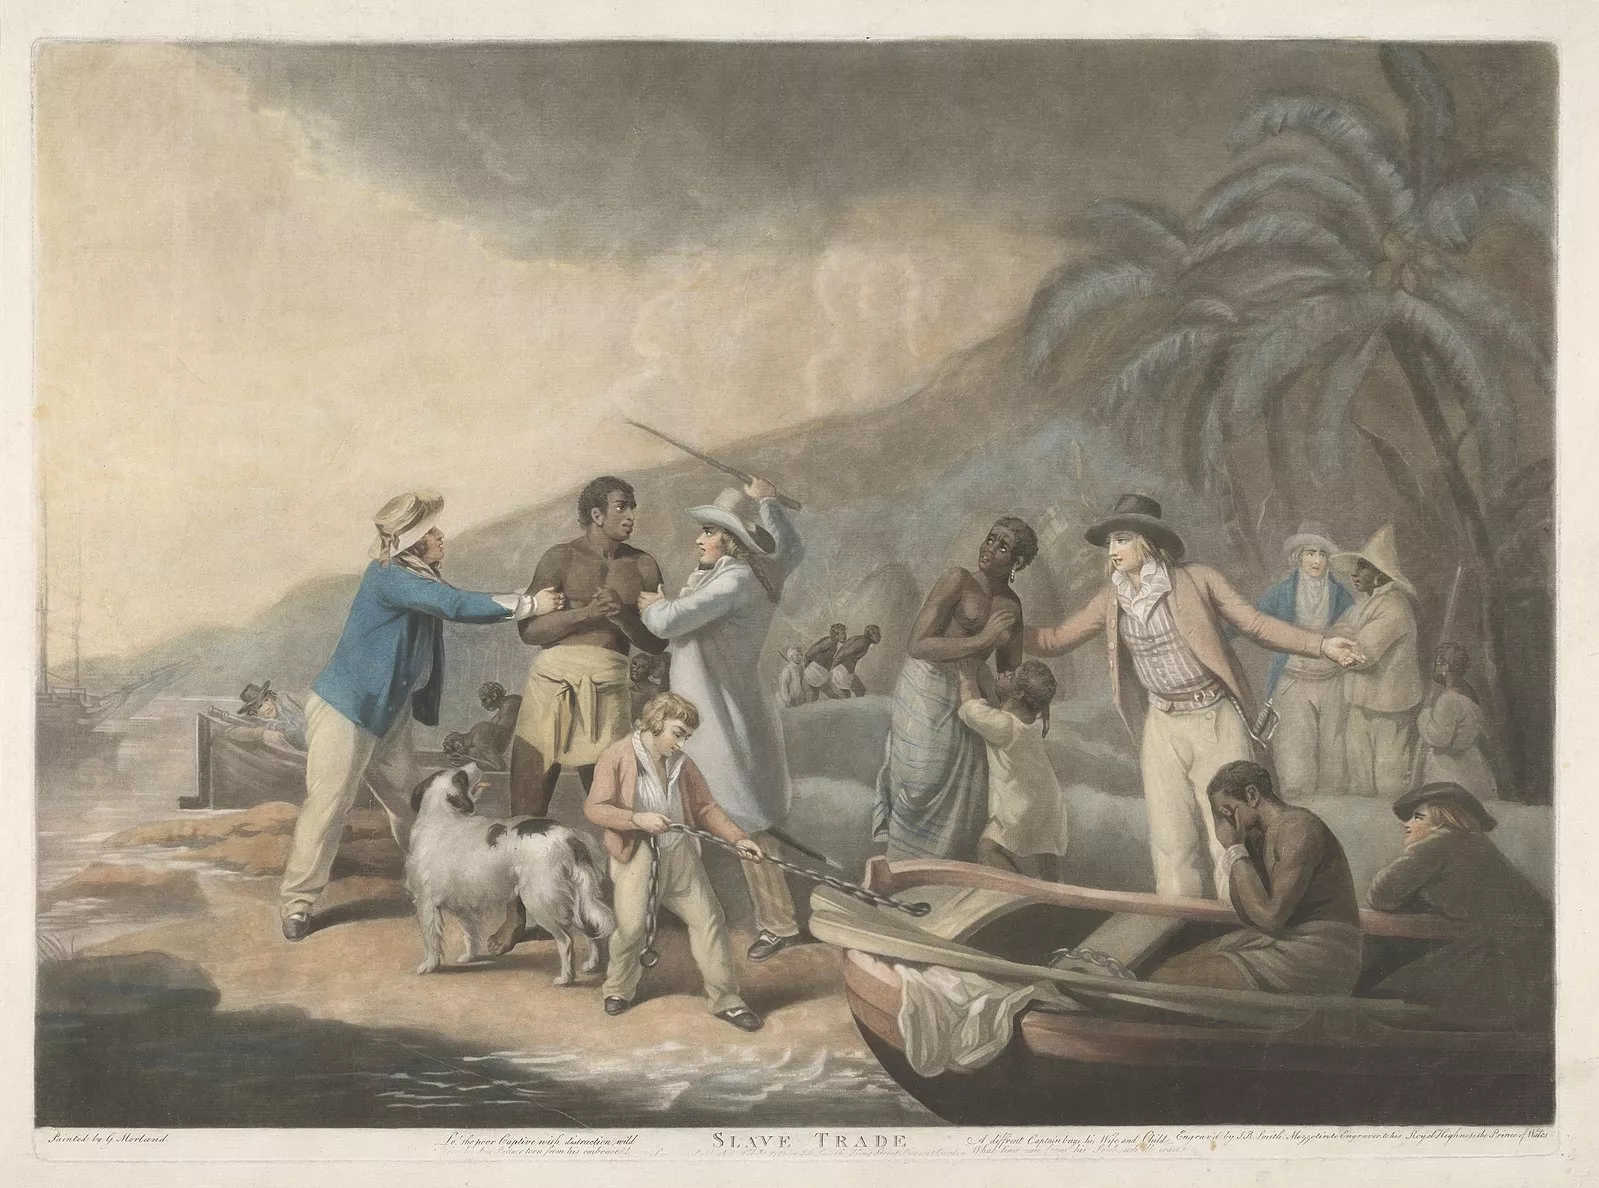 Aquest quadre de George Morland mostra un grup de traficants d’esclaus separant una família a la costa africana